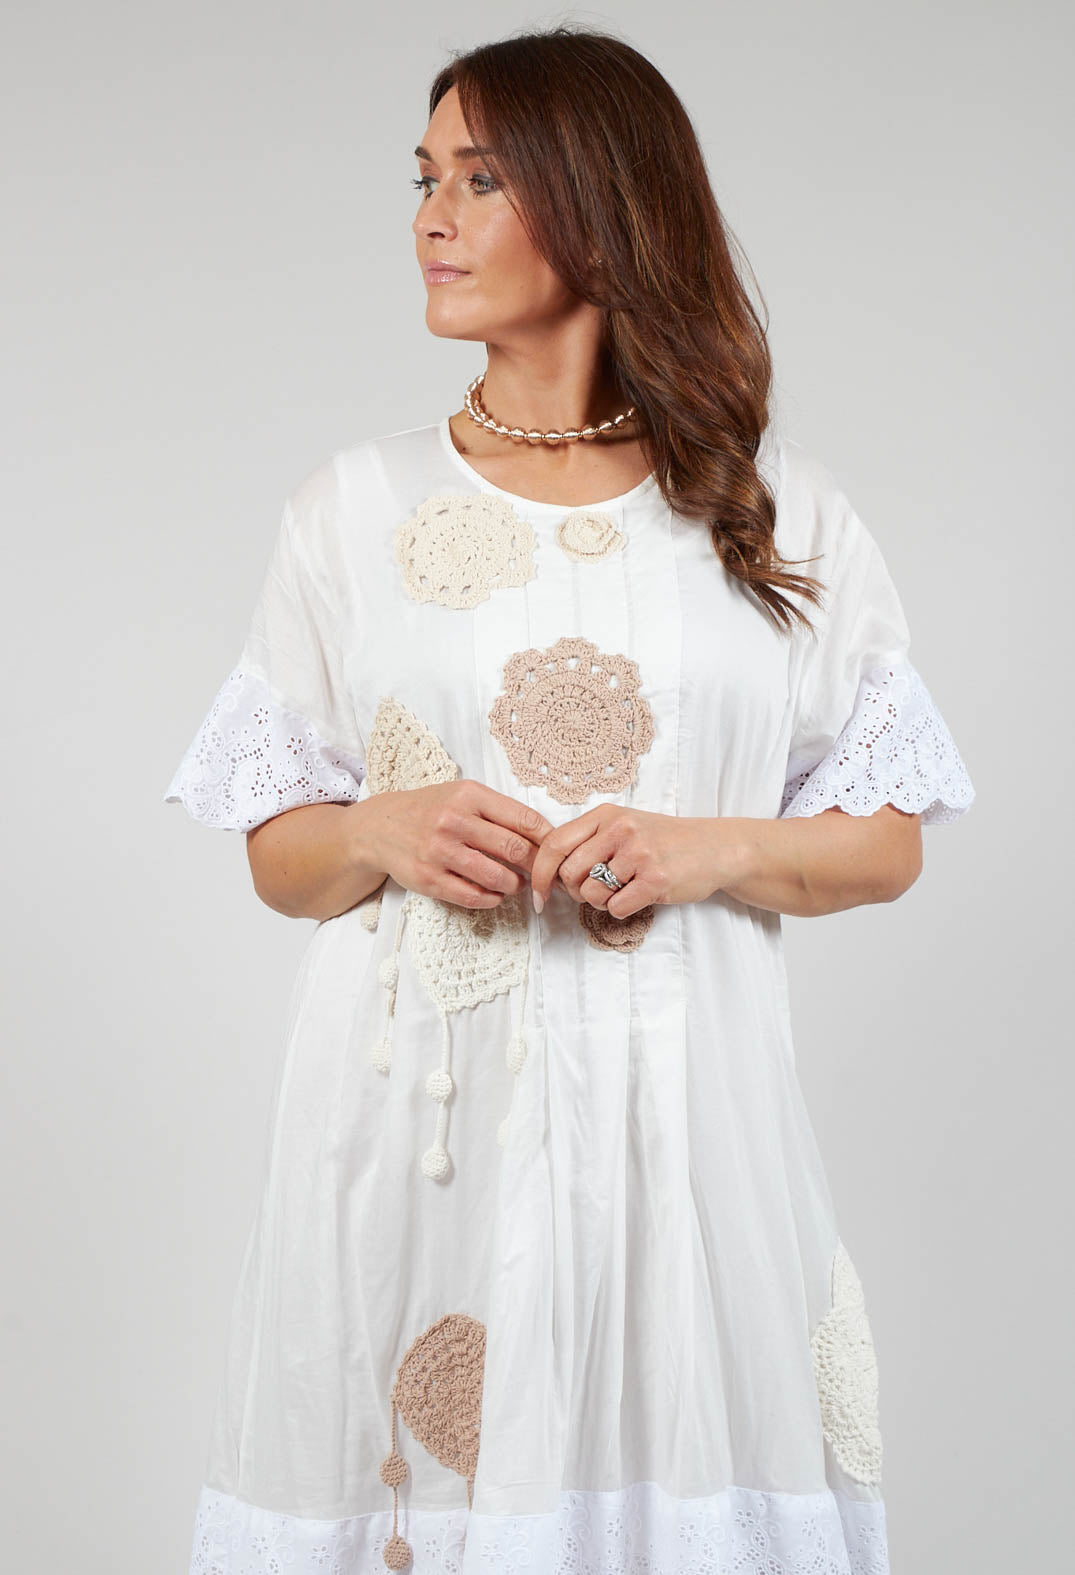 Crochet Detail Dress in White